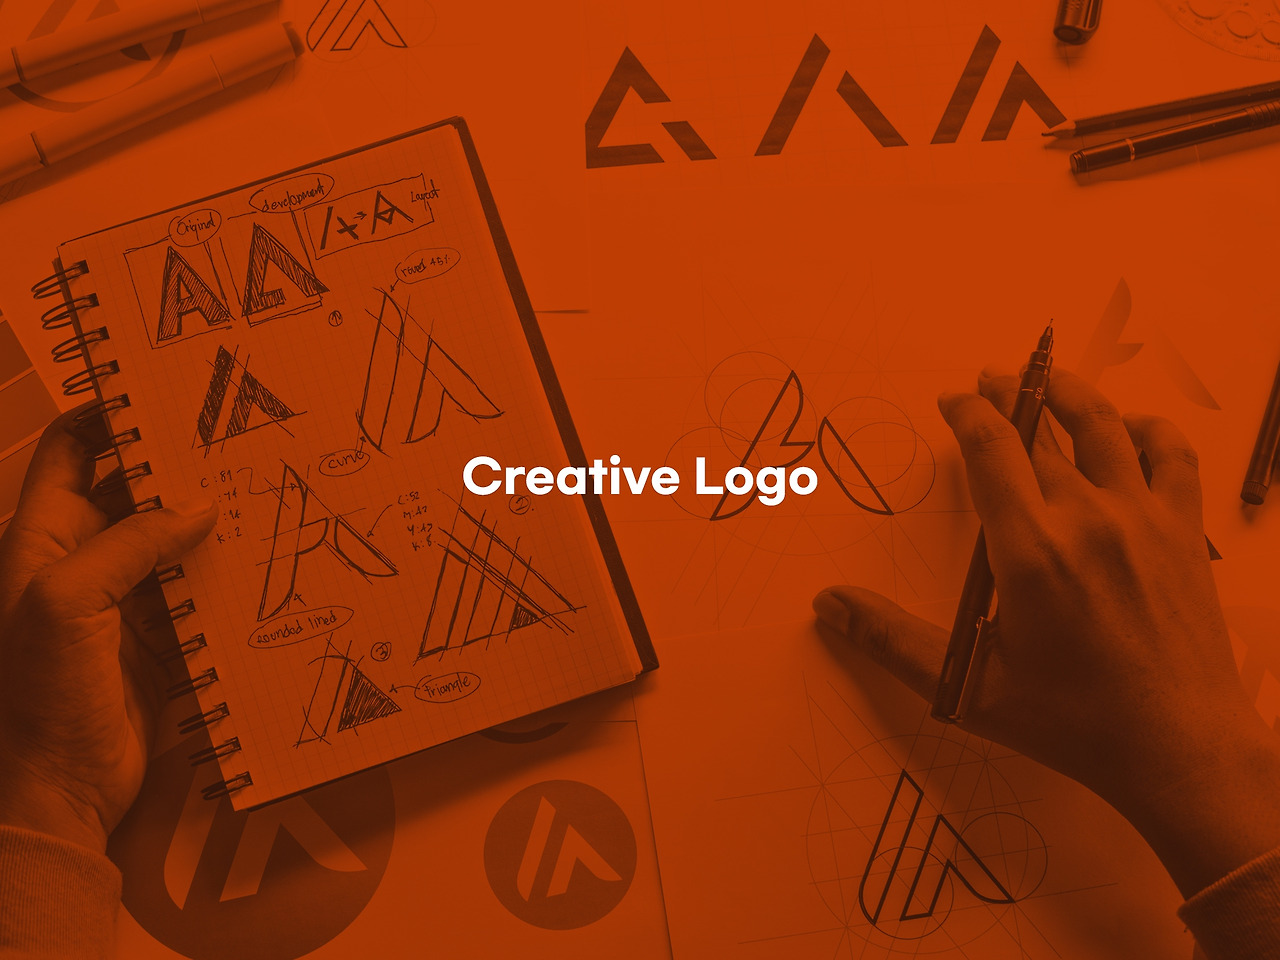 창의적인 로고 디자인 하기